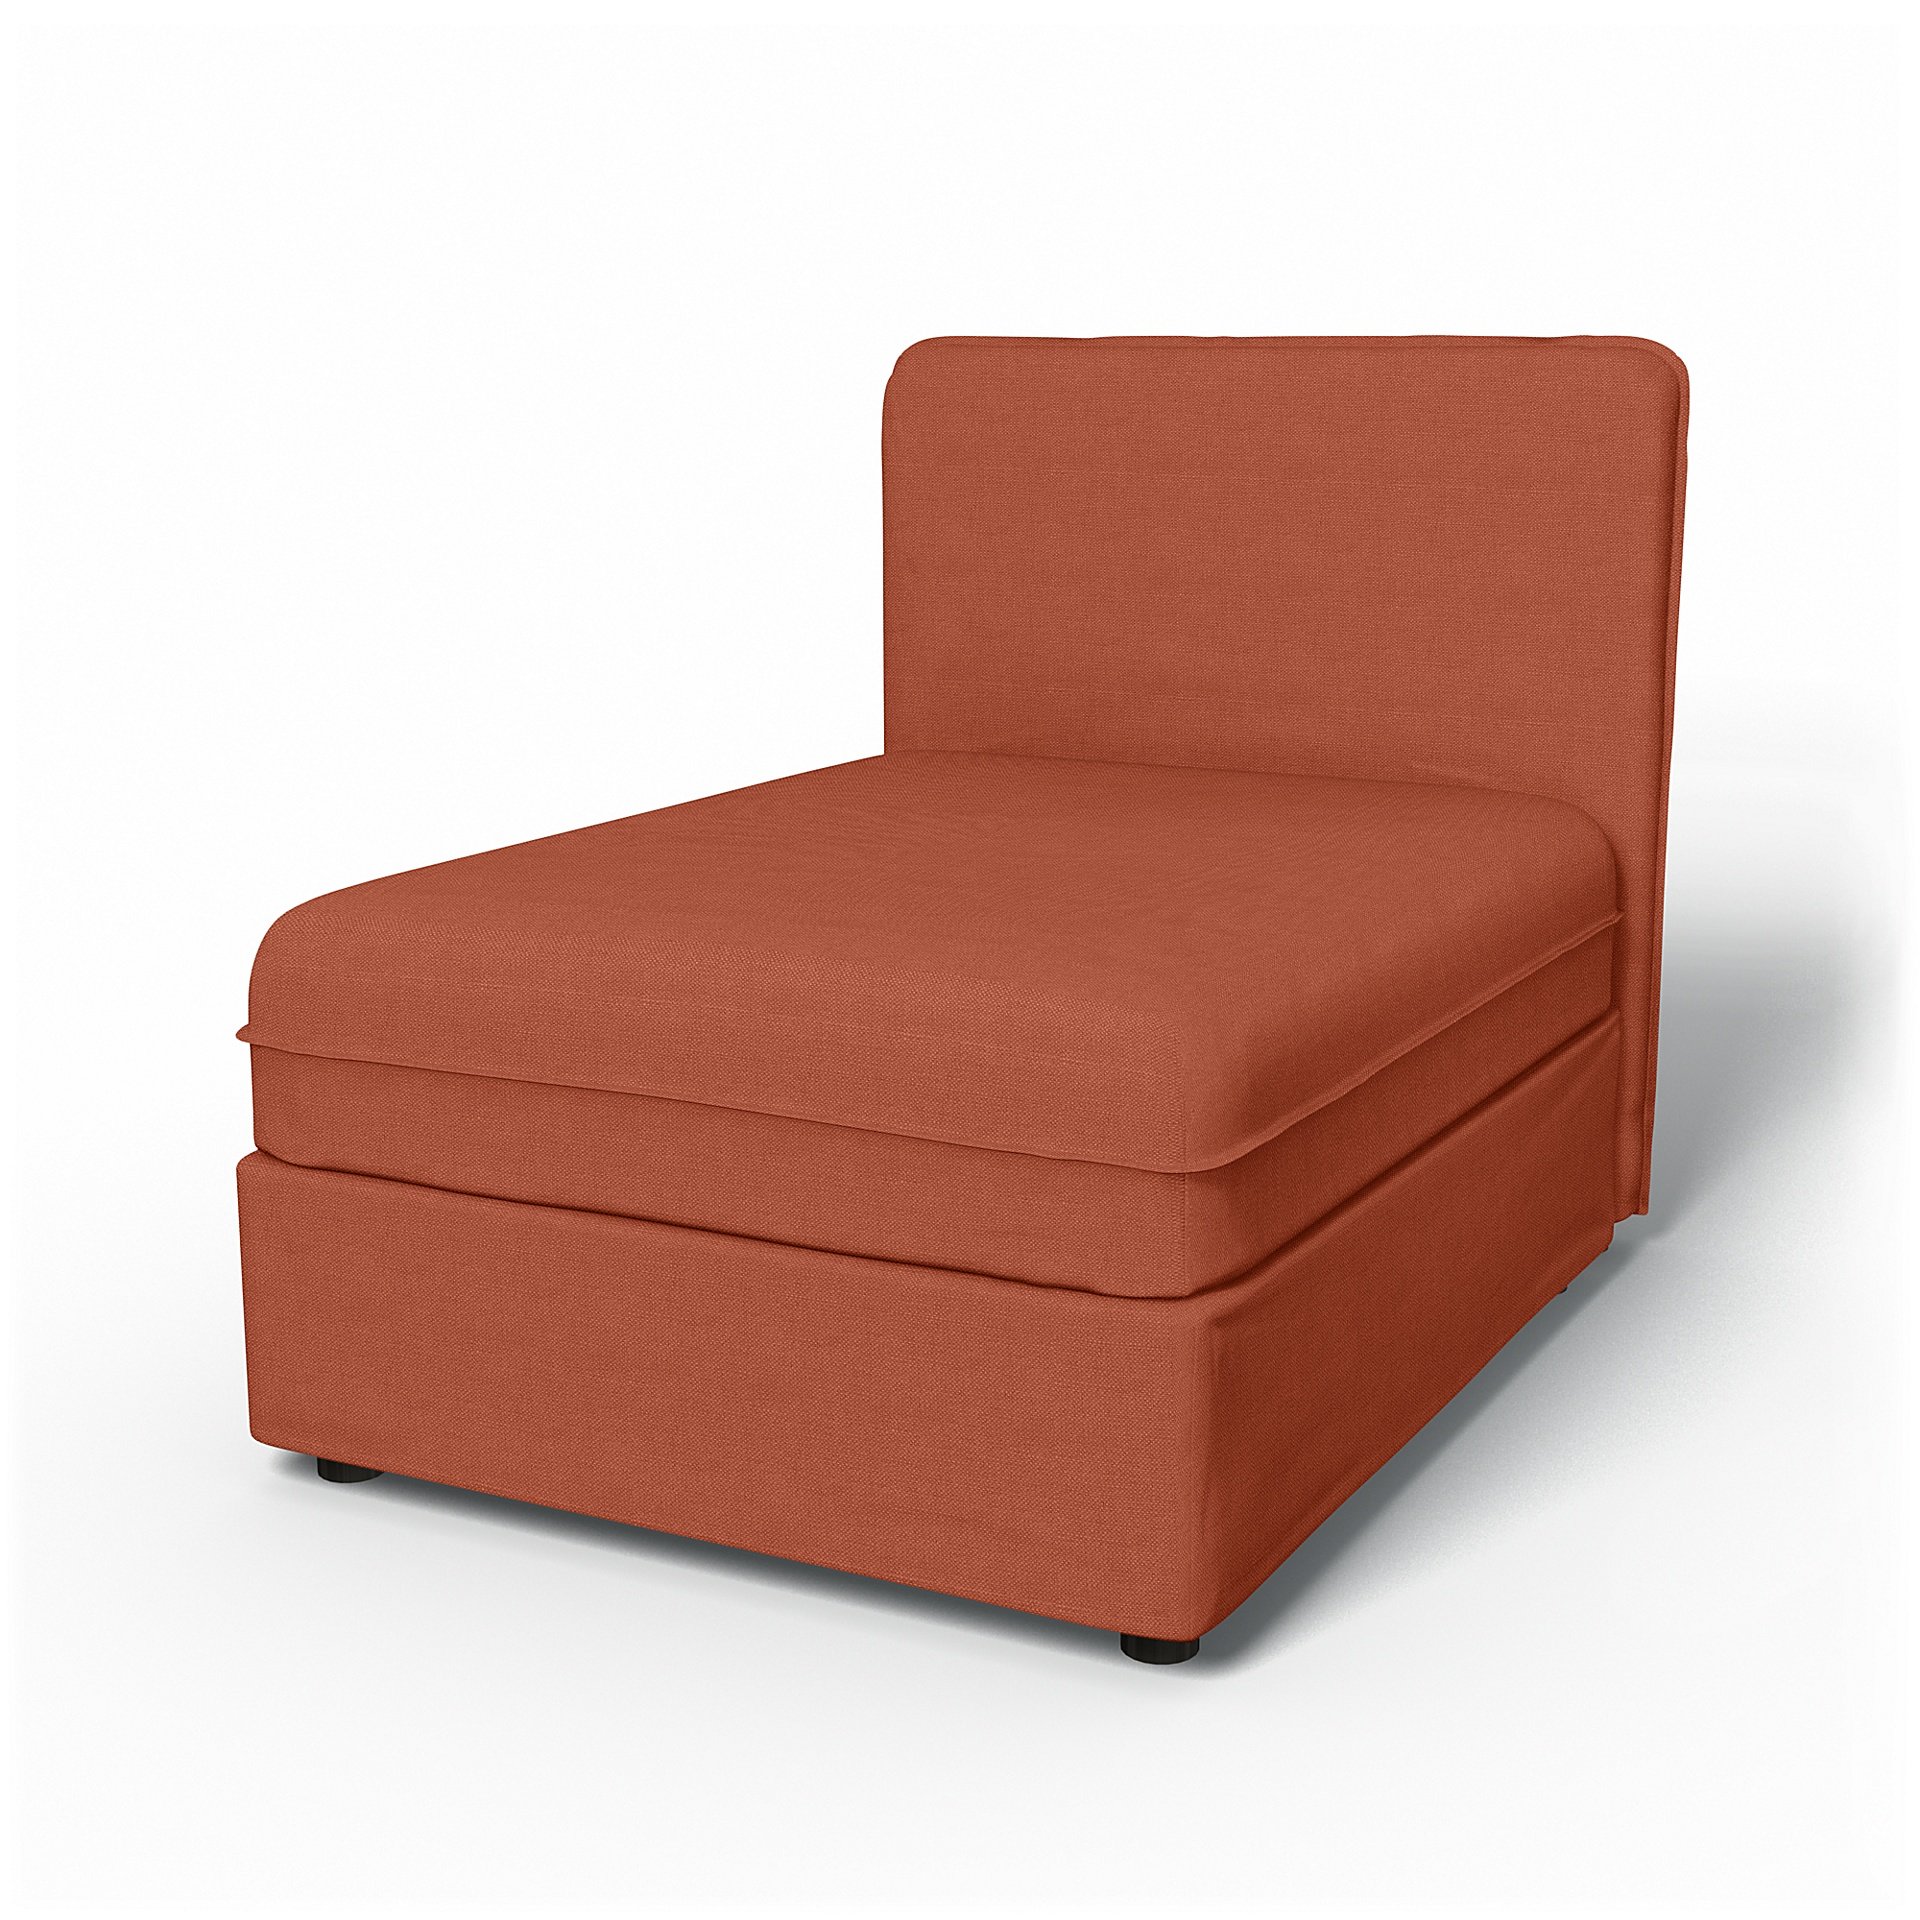 IKEA - Vallentuna Seat Module with Low Back Cover 80x100cm 32x39in, Burnt Orange, Linen - Bemz